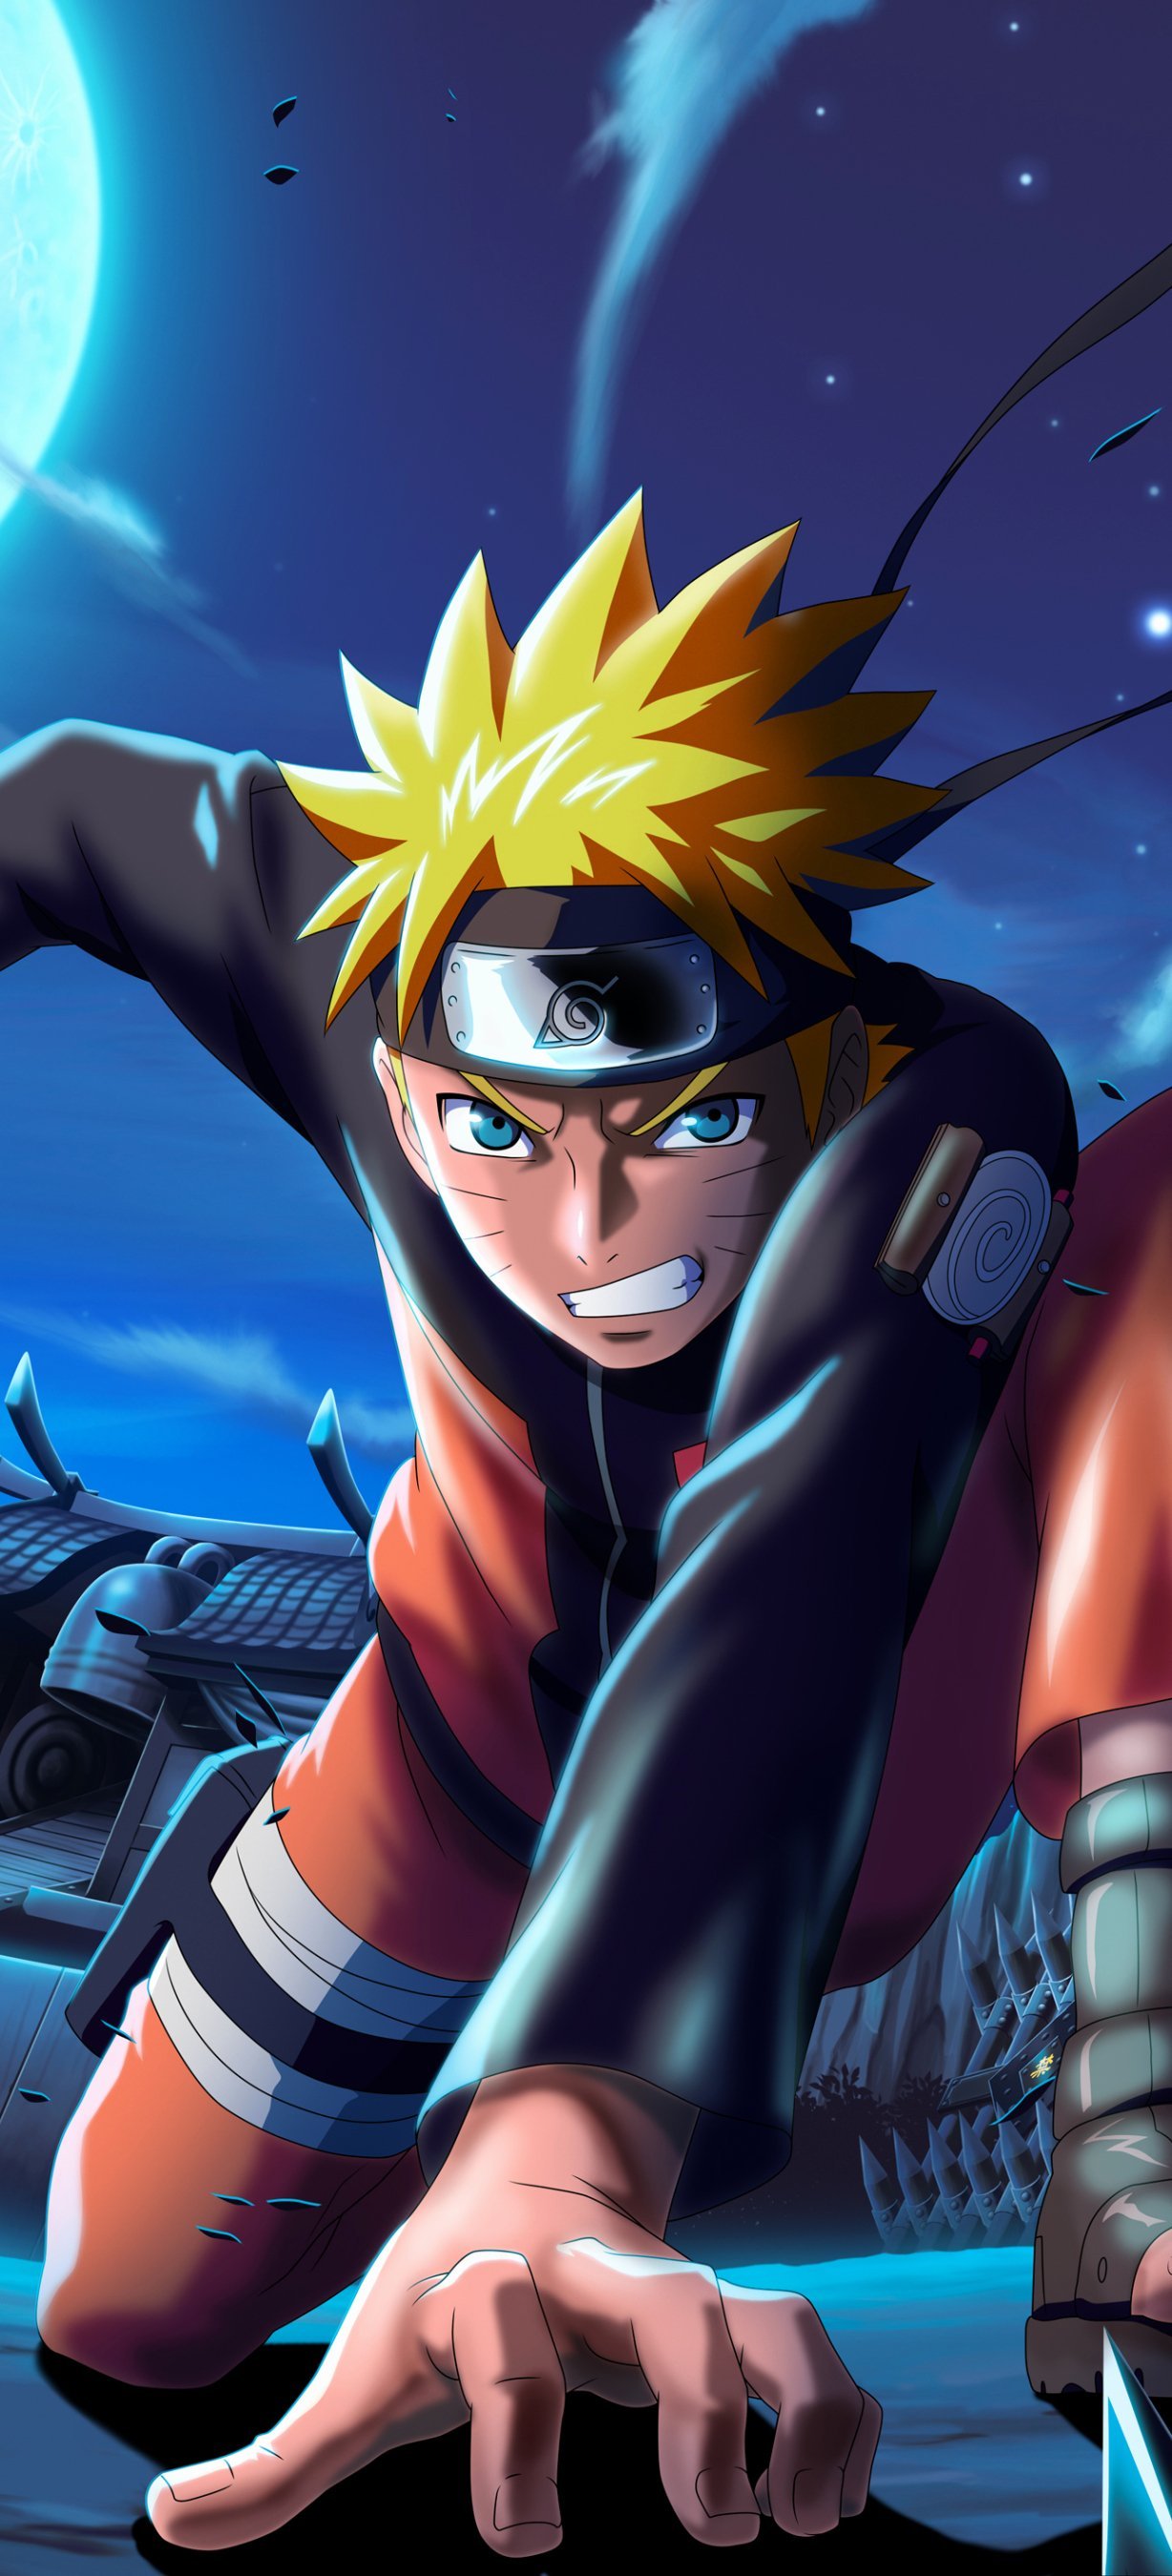 Naruto uzumaki, fictional anime character